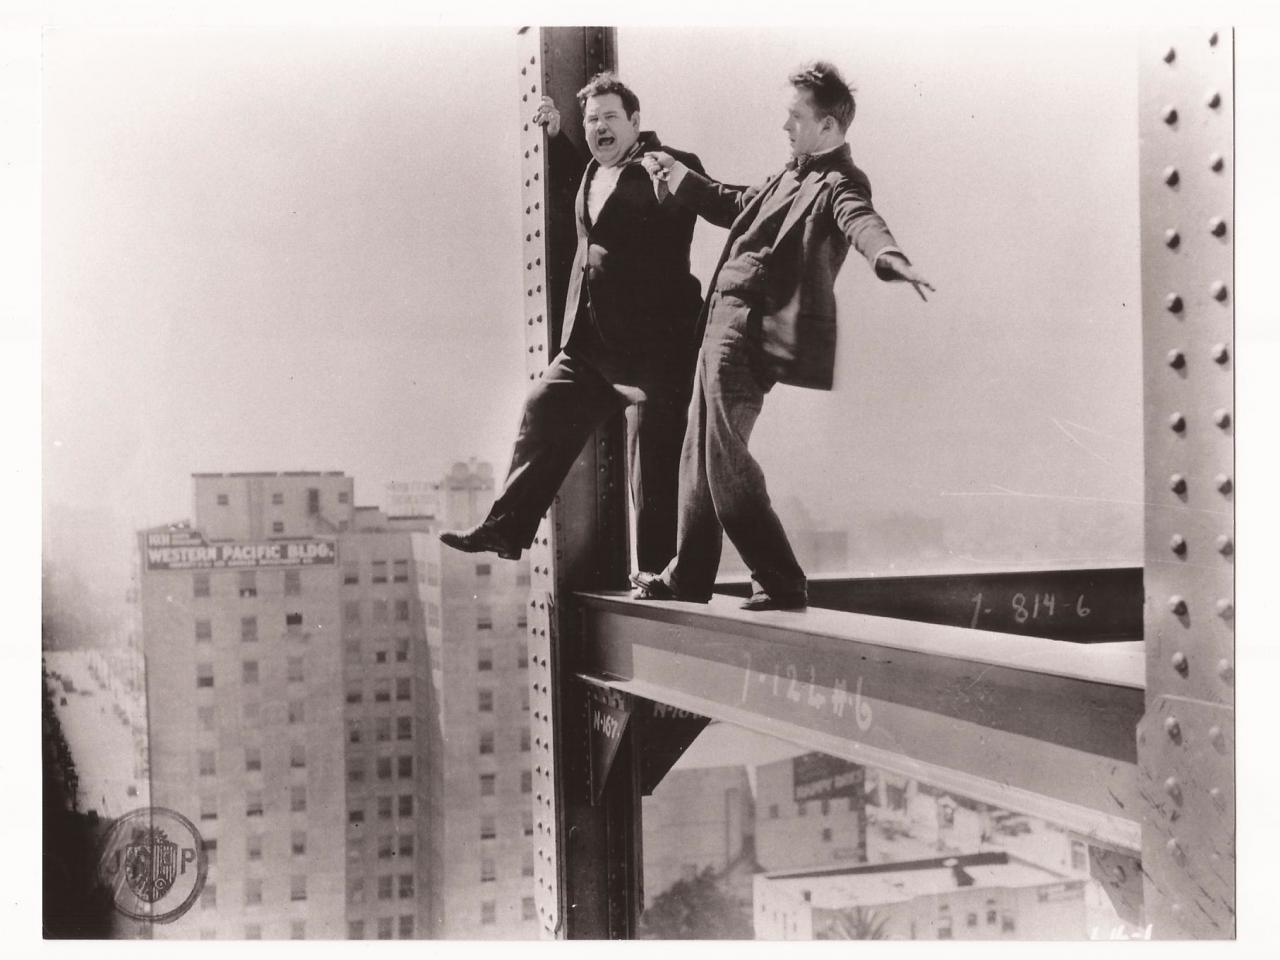 Laurel et Hardy Premiers coups de génie — Équinoxe